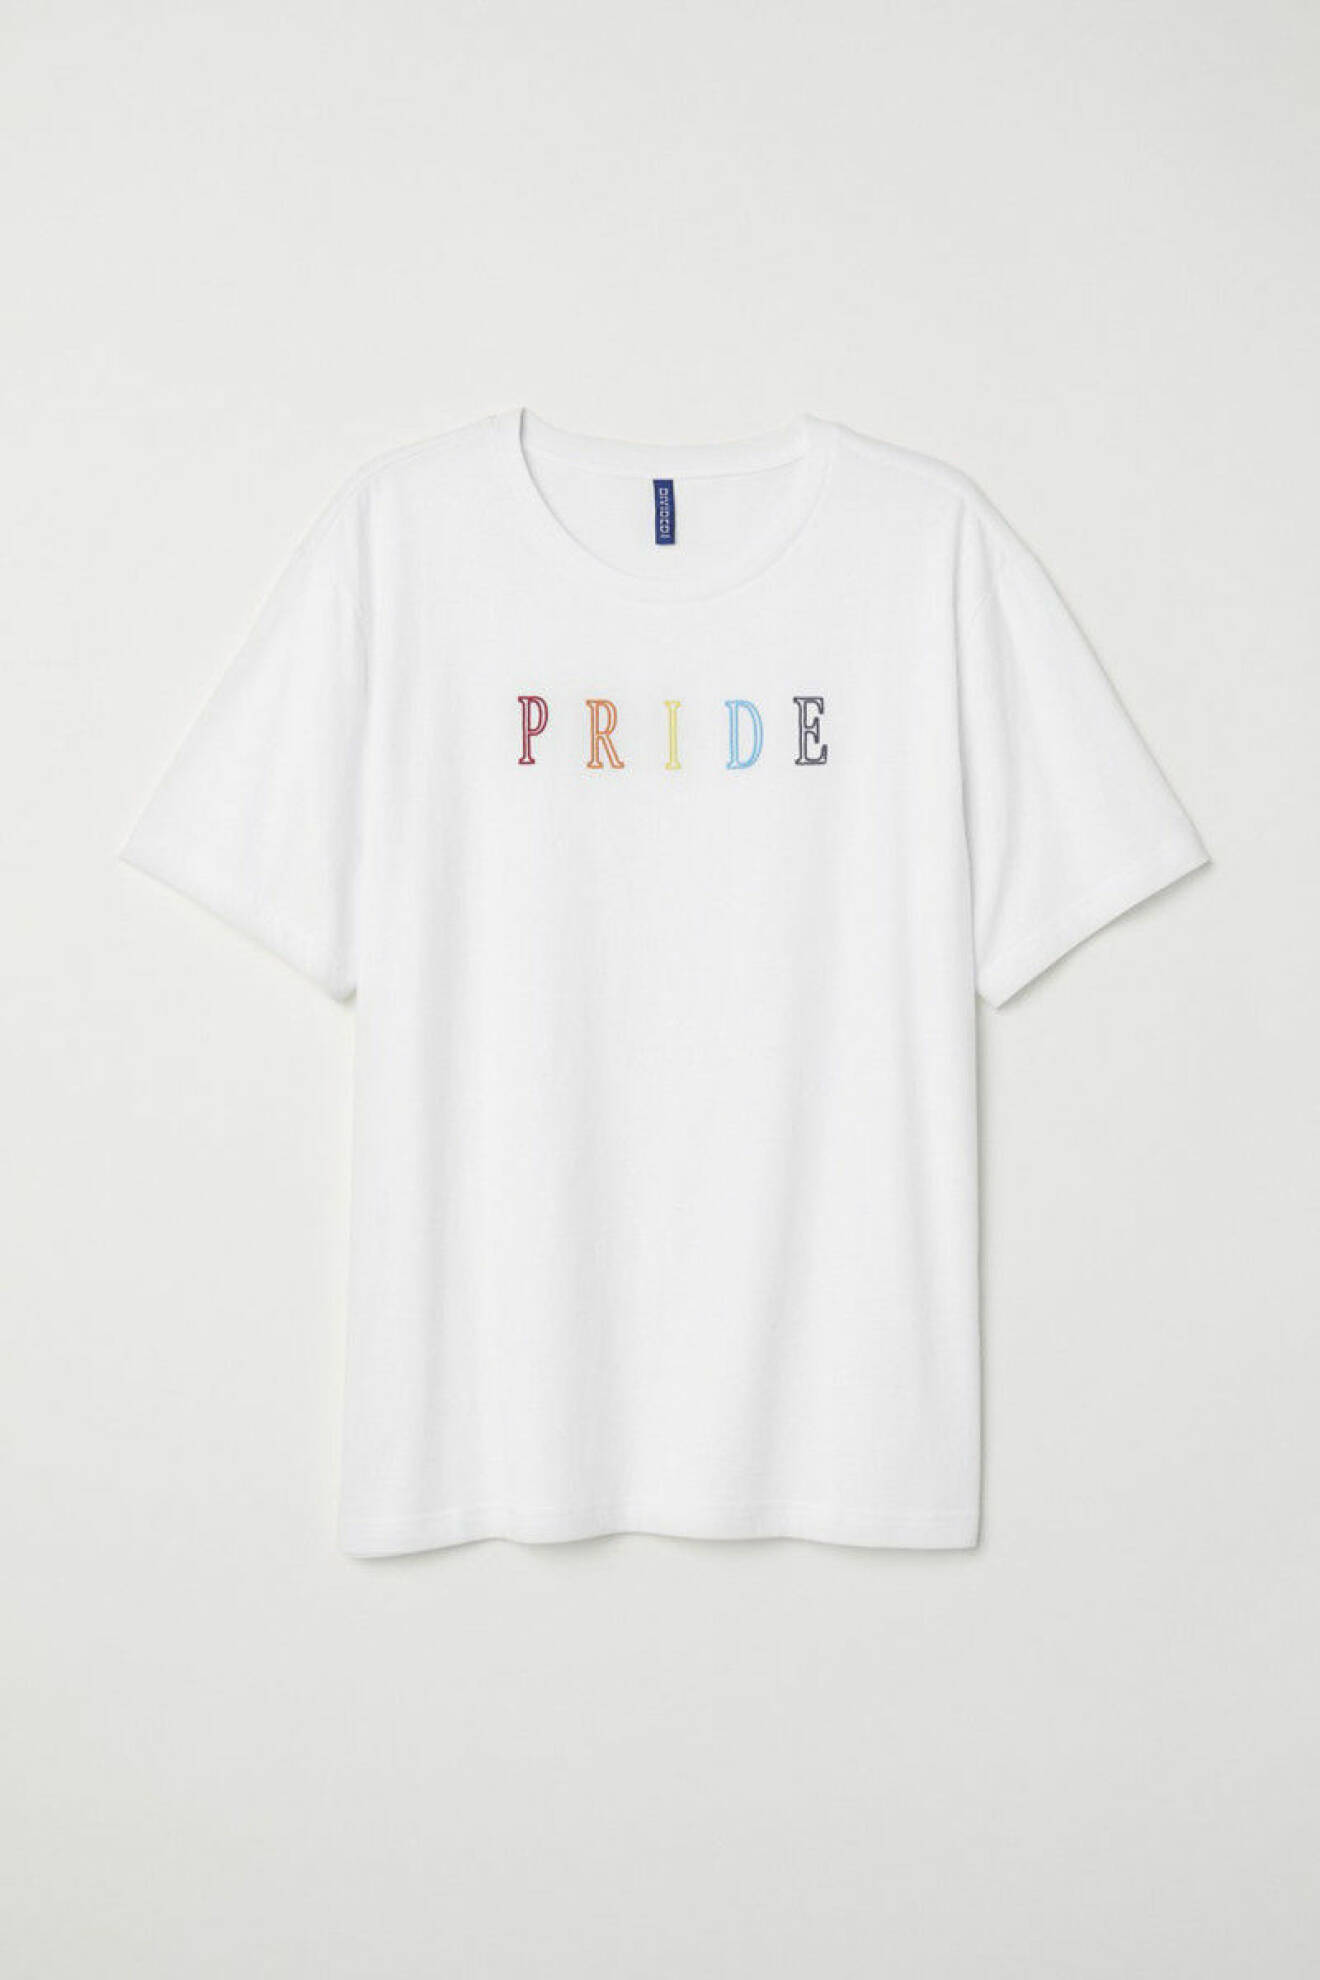 T-shirt, pride out loud, H&M pride-kollektion. 